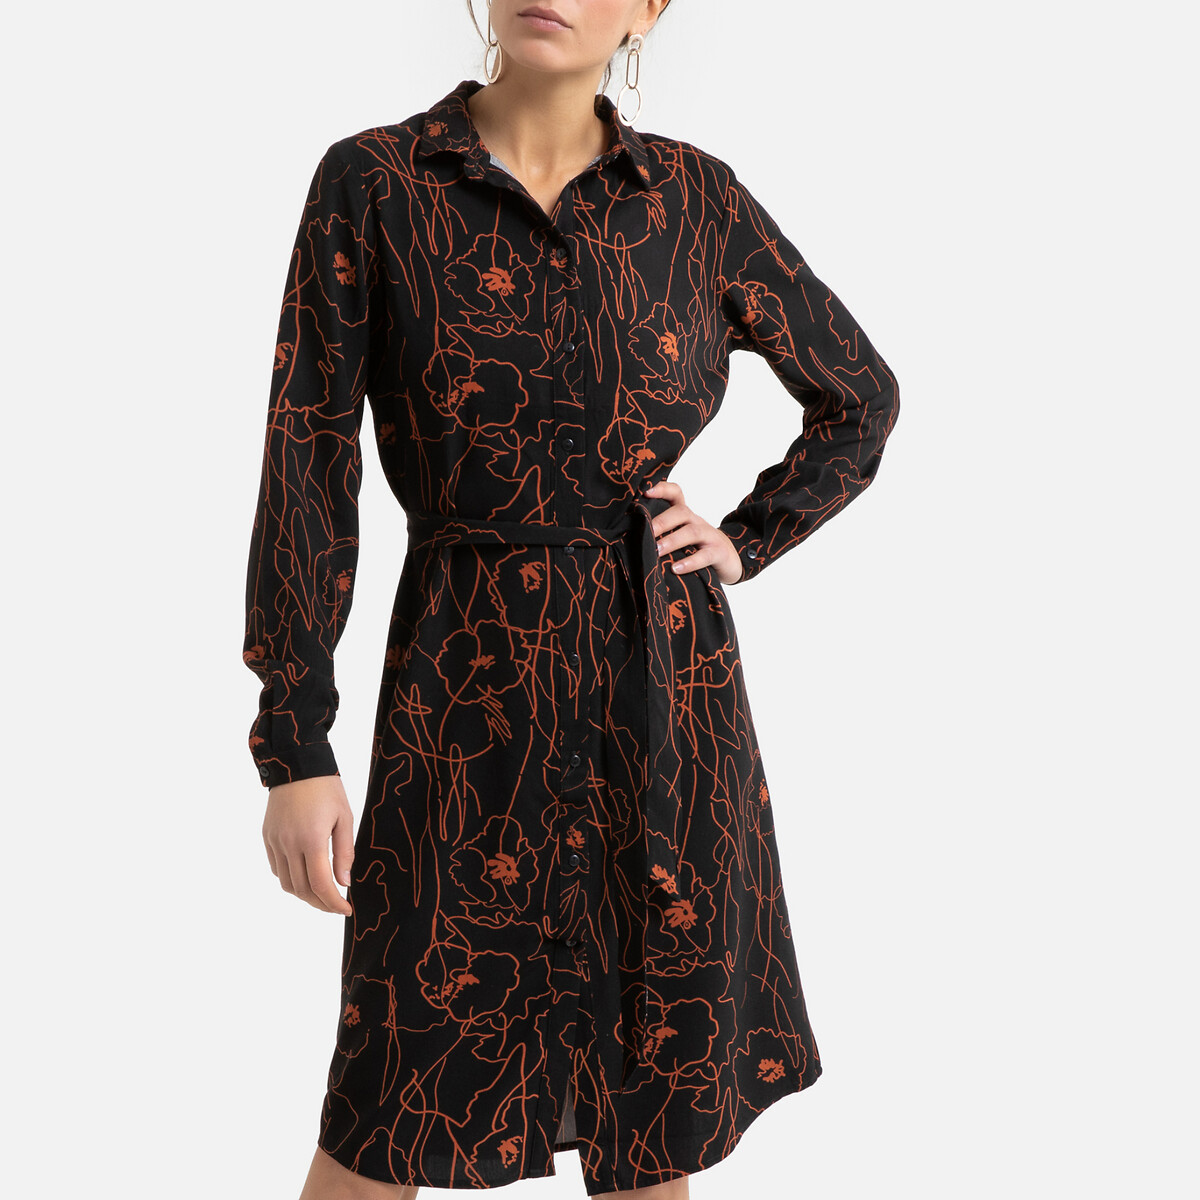 Платье-рубашка LaRedoute Длинное с графичным цветочным принтом 40 (FR) - 46 (RUS) черный, размер 40 (FR) - 46 (RUS) Длинное с графичным цветочным принтом 40 (FR) - 46 (RUS) черный - фото 1